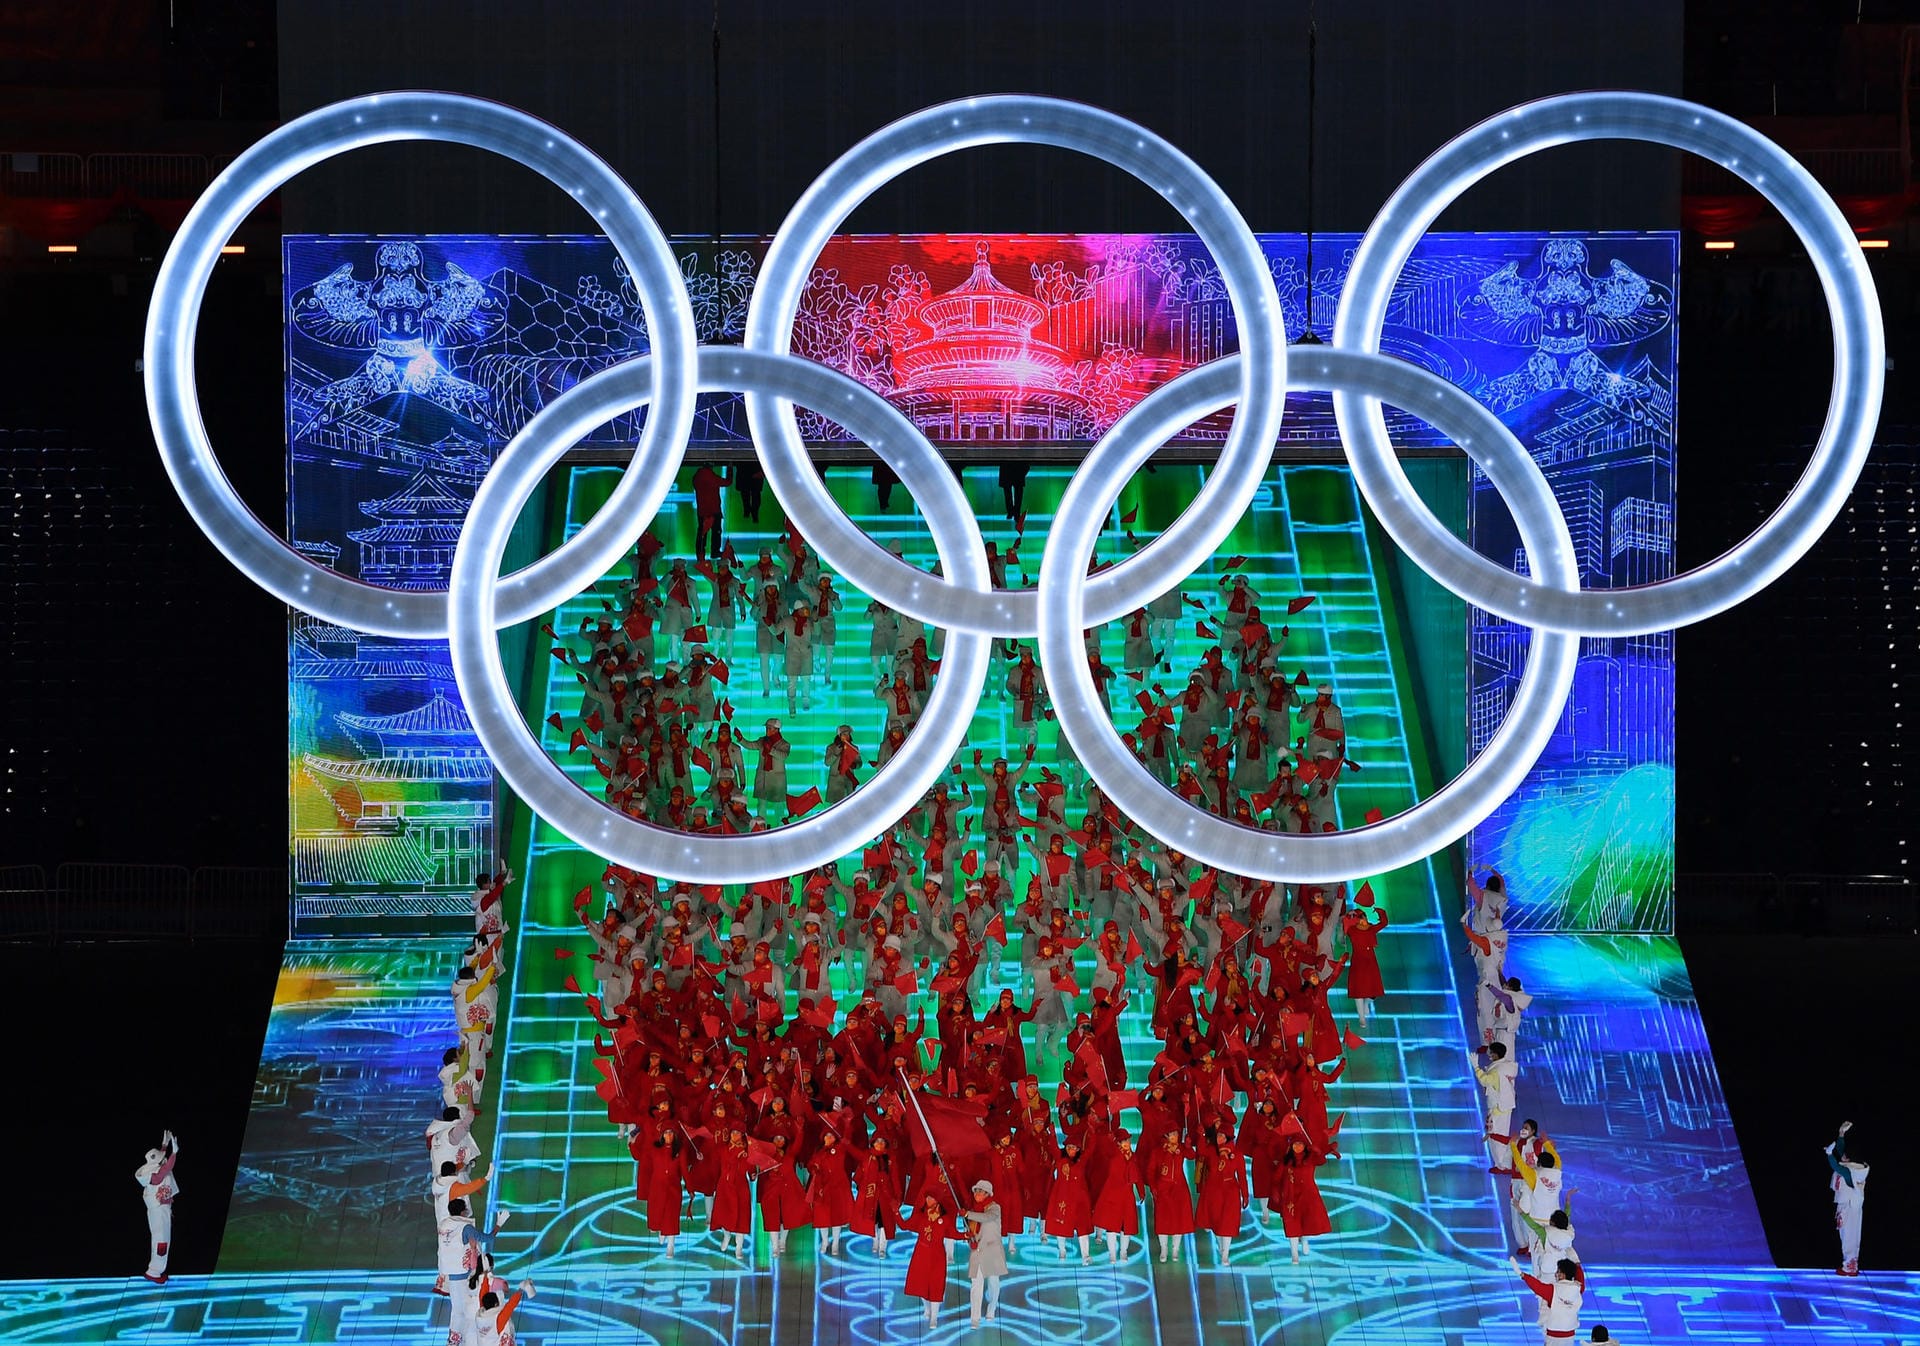 Das Gastgeberland betritt die Fläche, es gibt Applaus von Präsident Xi Jinping: Darüber prangen die olympischen Ringe. Gleich startet die Rede von IOC-Präsident Thomas Bach.